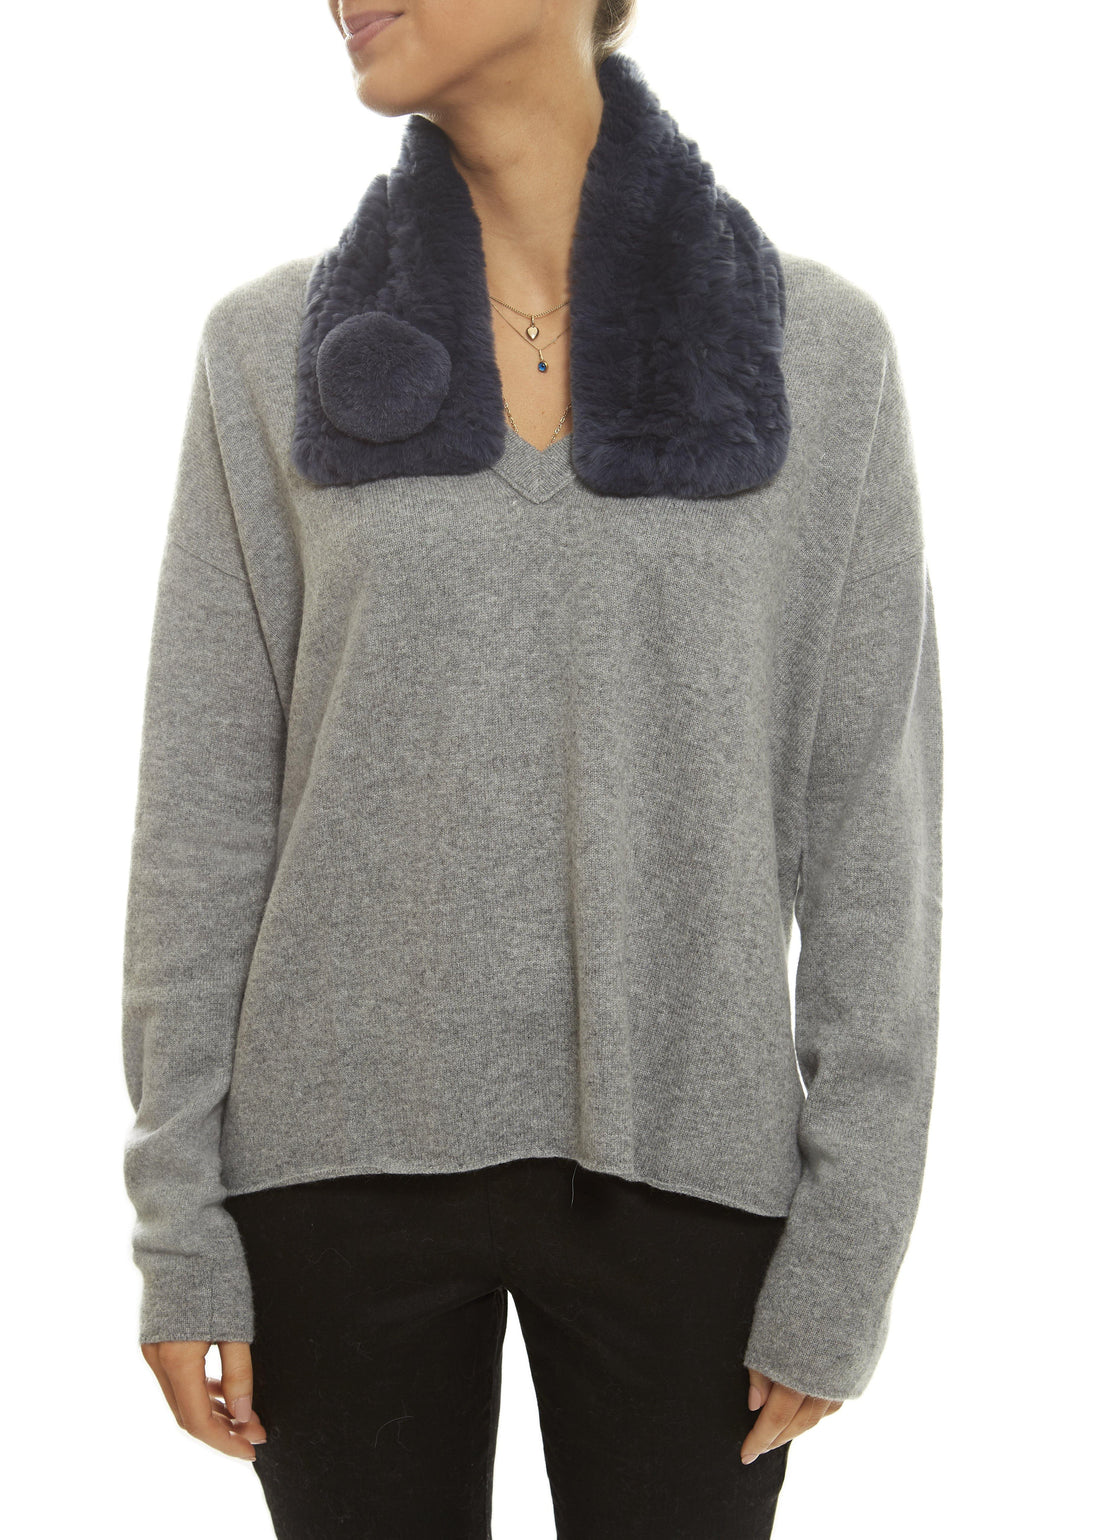 Dark Blue Bobble Knitted Rabbit Luxury Fur Scarf - Jessimara